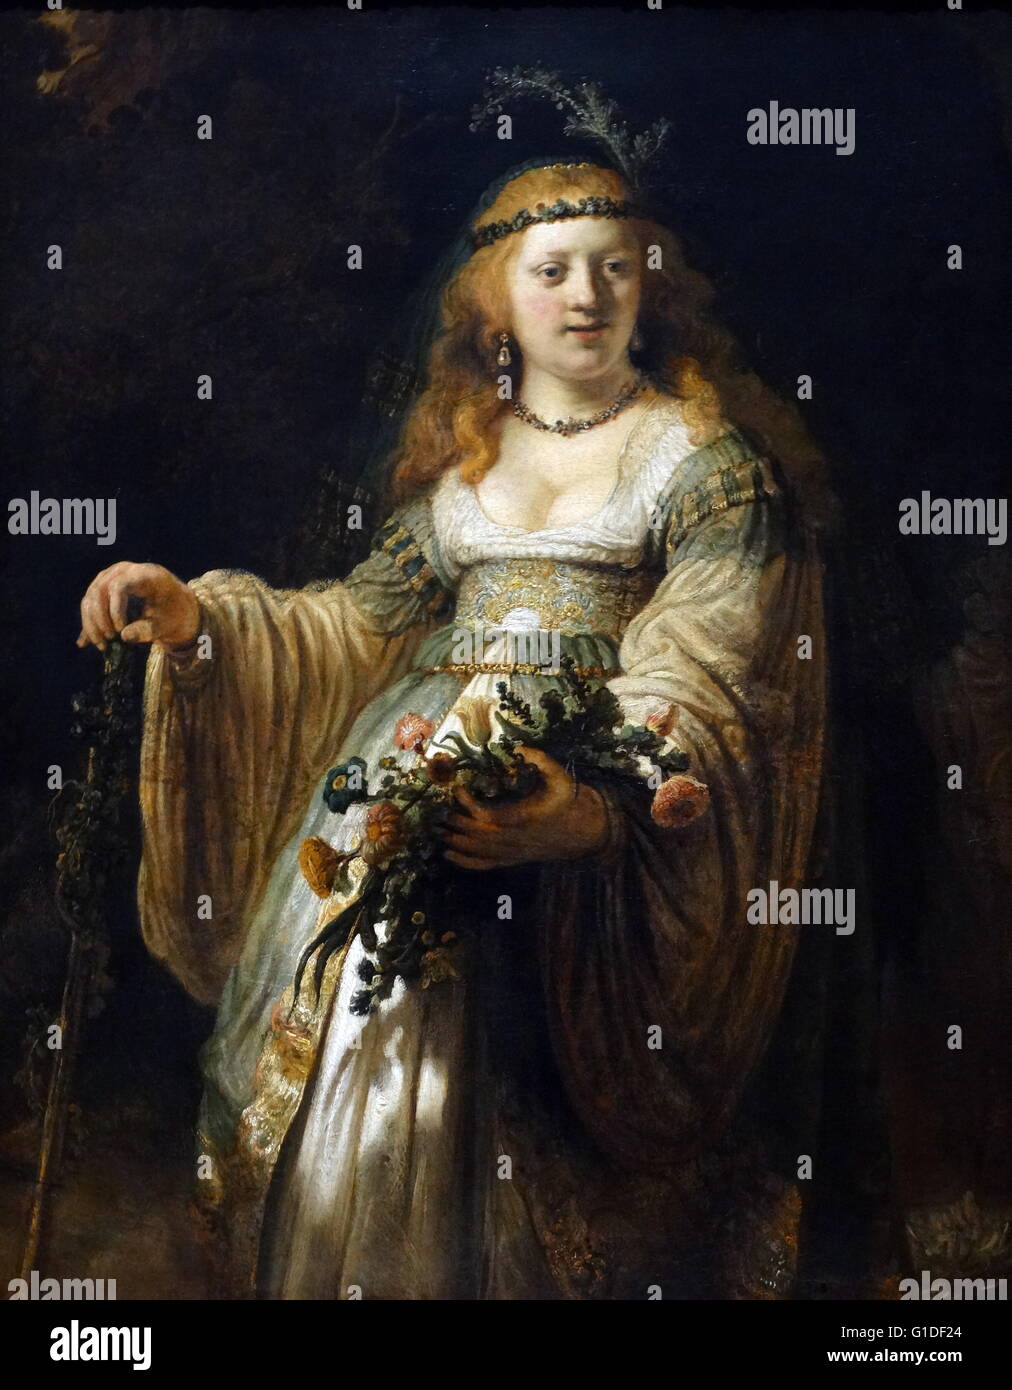 Gemälde mit dem Titel "Saskia van Uylenburgh in arkadischen Kostüm" von Rembrandt Harmenszoon van Rijn (1606-1669), niederländischer Maler und Radierer. Vom 17. Jahrhundert Stockfoto